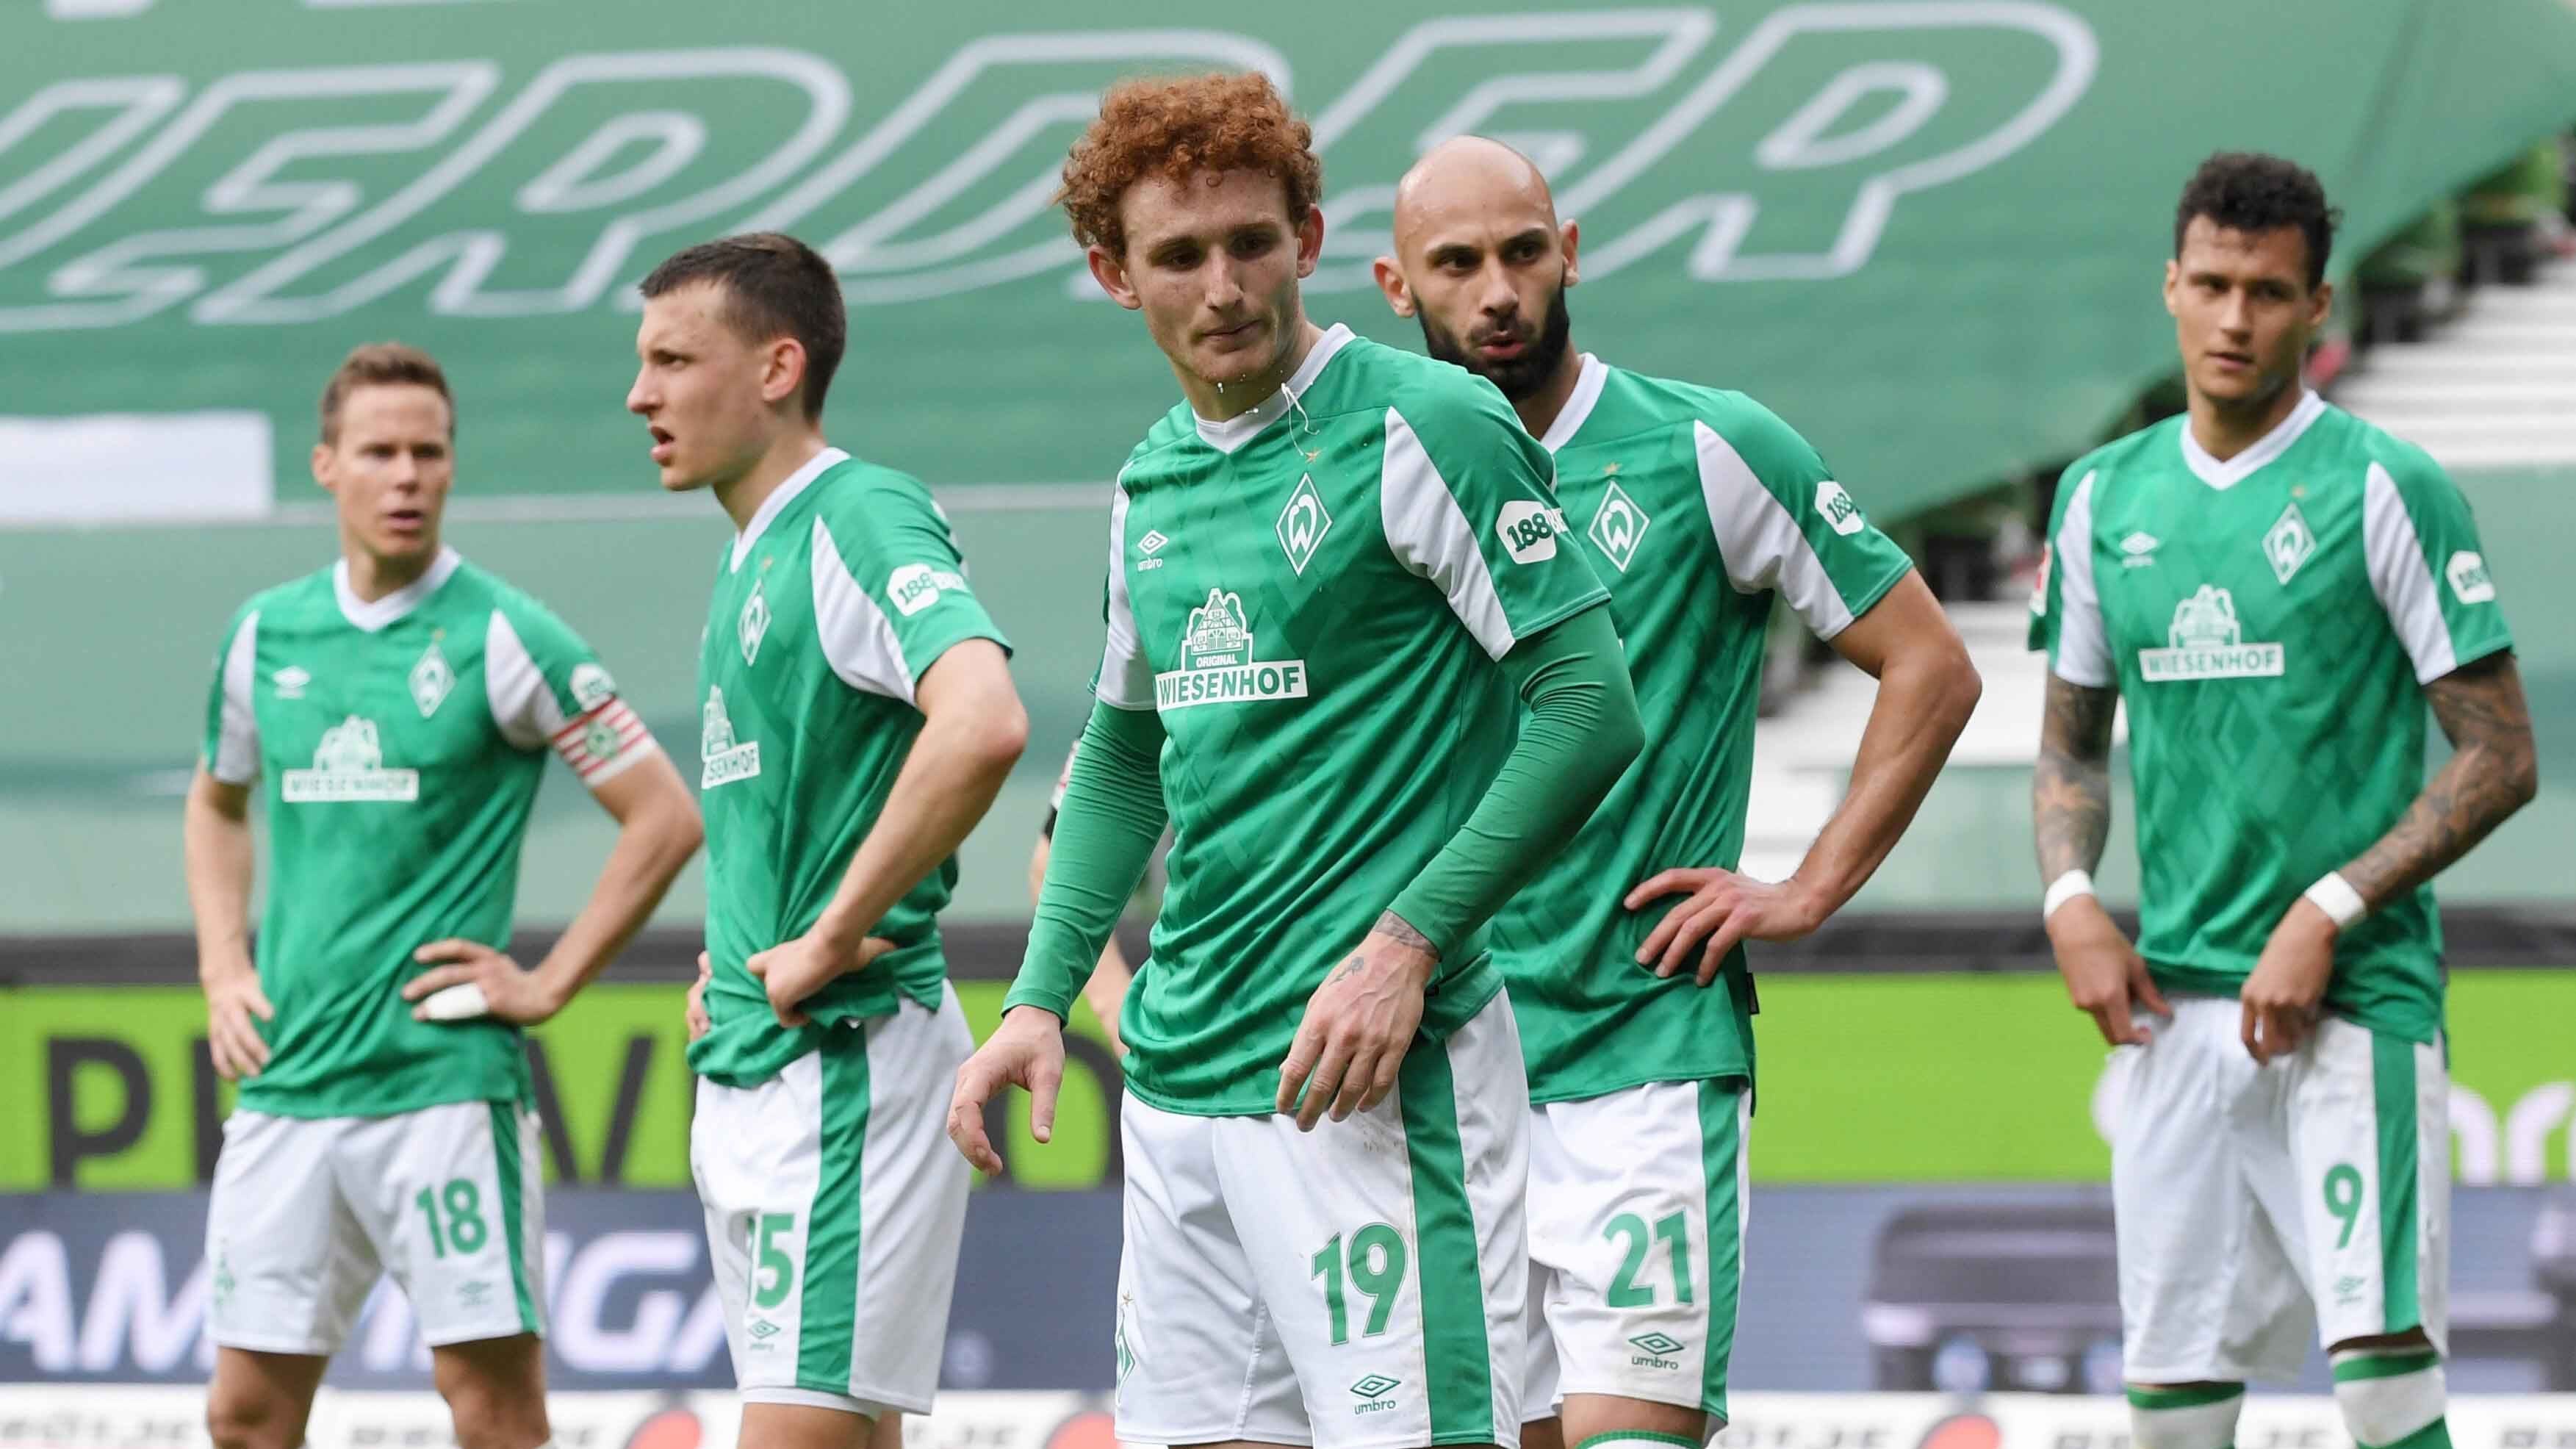 
                <strong>Absteiger: SV Werder Bremen (5,8 Millionen Euro)</strong><br>
                Der SV Werder Bremen ist durch seinen Abstieg in der abgelaufenen Saison eigentlich von dieser Wertung ausgeschlossen. Die 5,8 Millionen Euro, die der Verein für Spielerberater ausgegeben hat, sind dennoch erwähnenswert. Denn der Betrag würde für einen hinteren Mittelfeldplatz genügen.
              